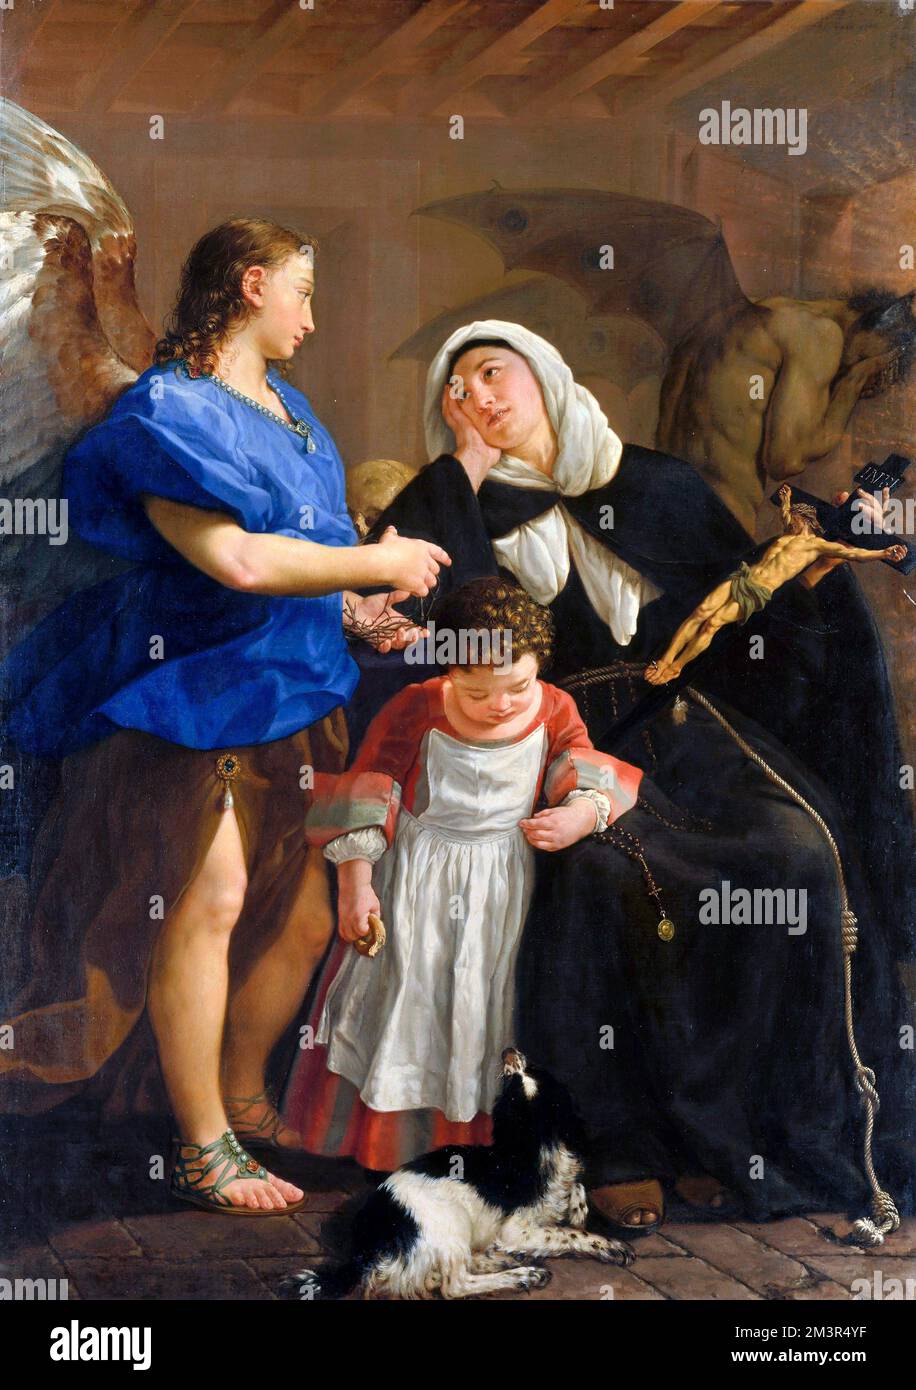 Saint Margaret de Cortona par le peintre italien Rococo, Gaspare Traversi (1722 -1770), huile sur toile, c. 1758 Banque D'Images